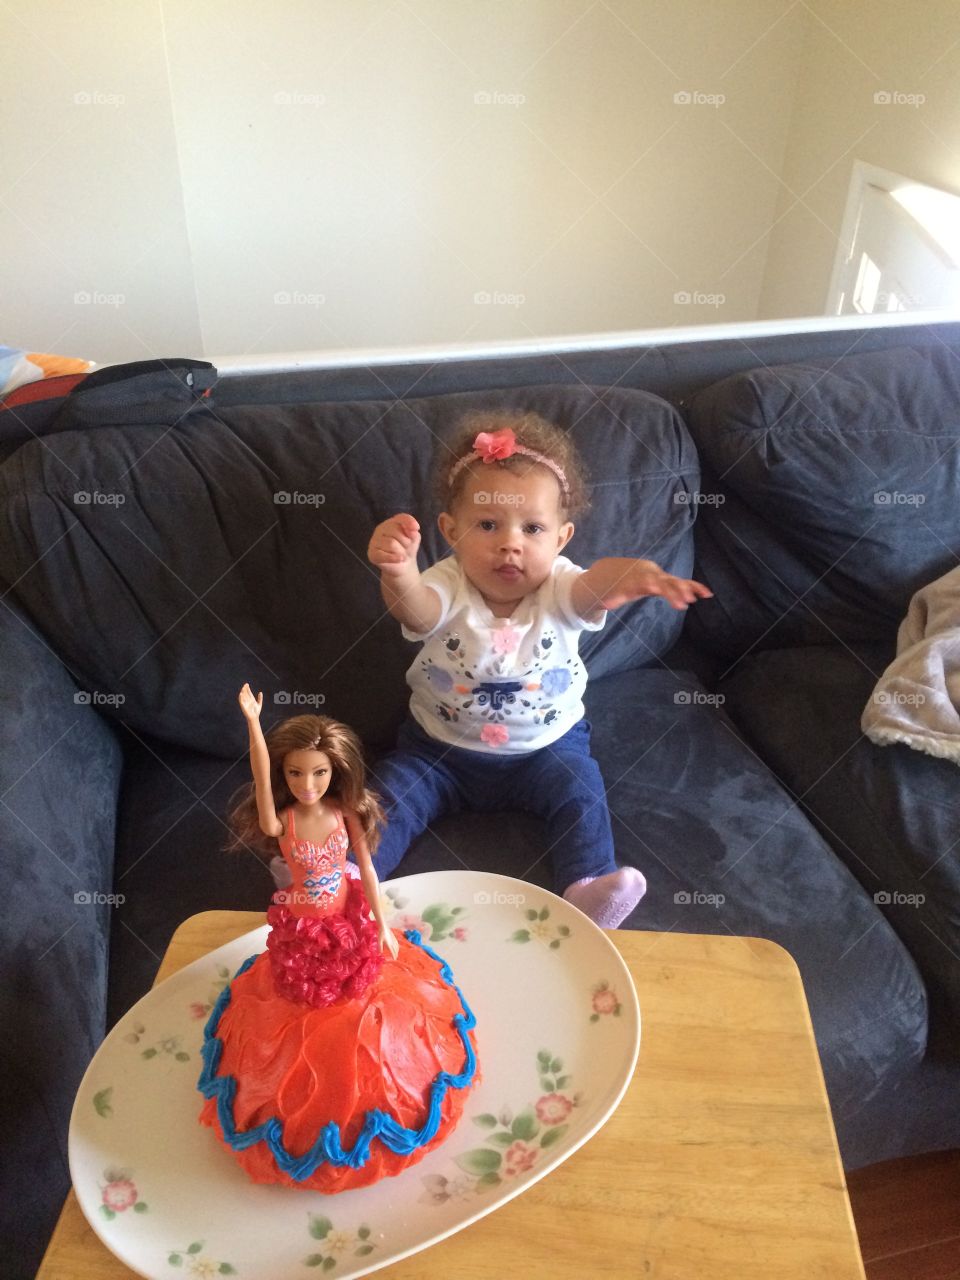 Baby and birthday cake